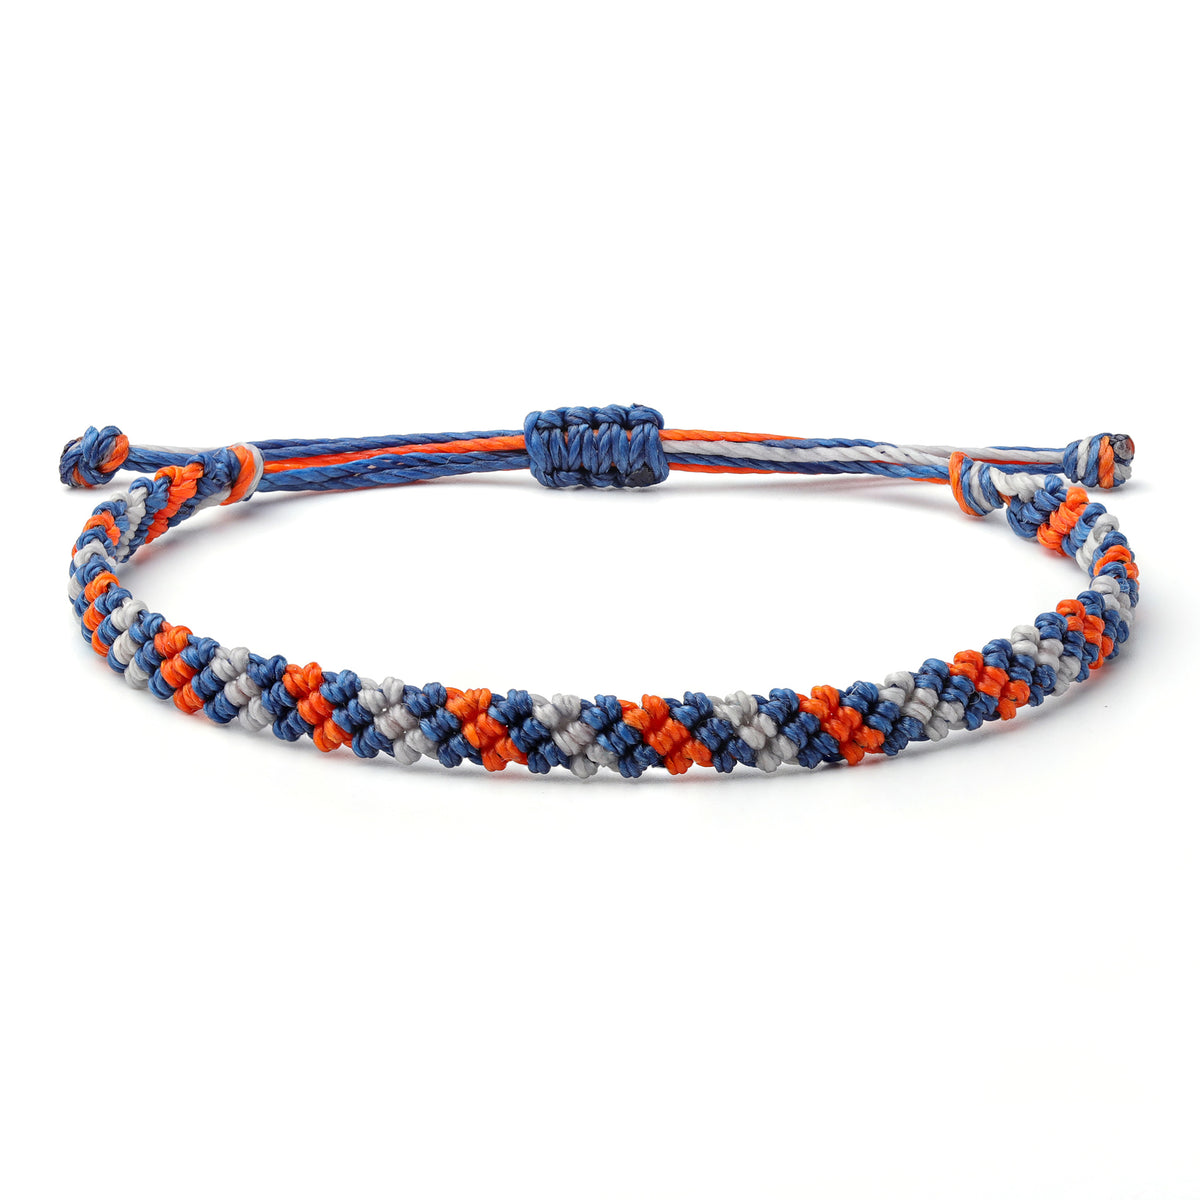 Braided Wax Coated Waterproof Adjustable Bracelet, Multi Color Blue, Orange, Silver